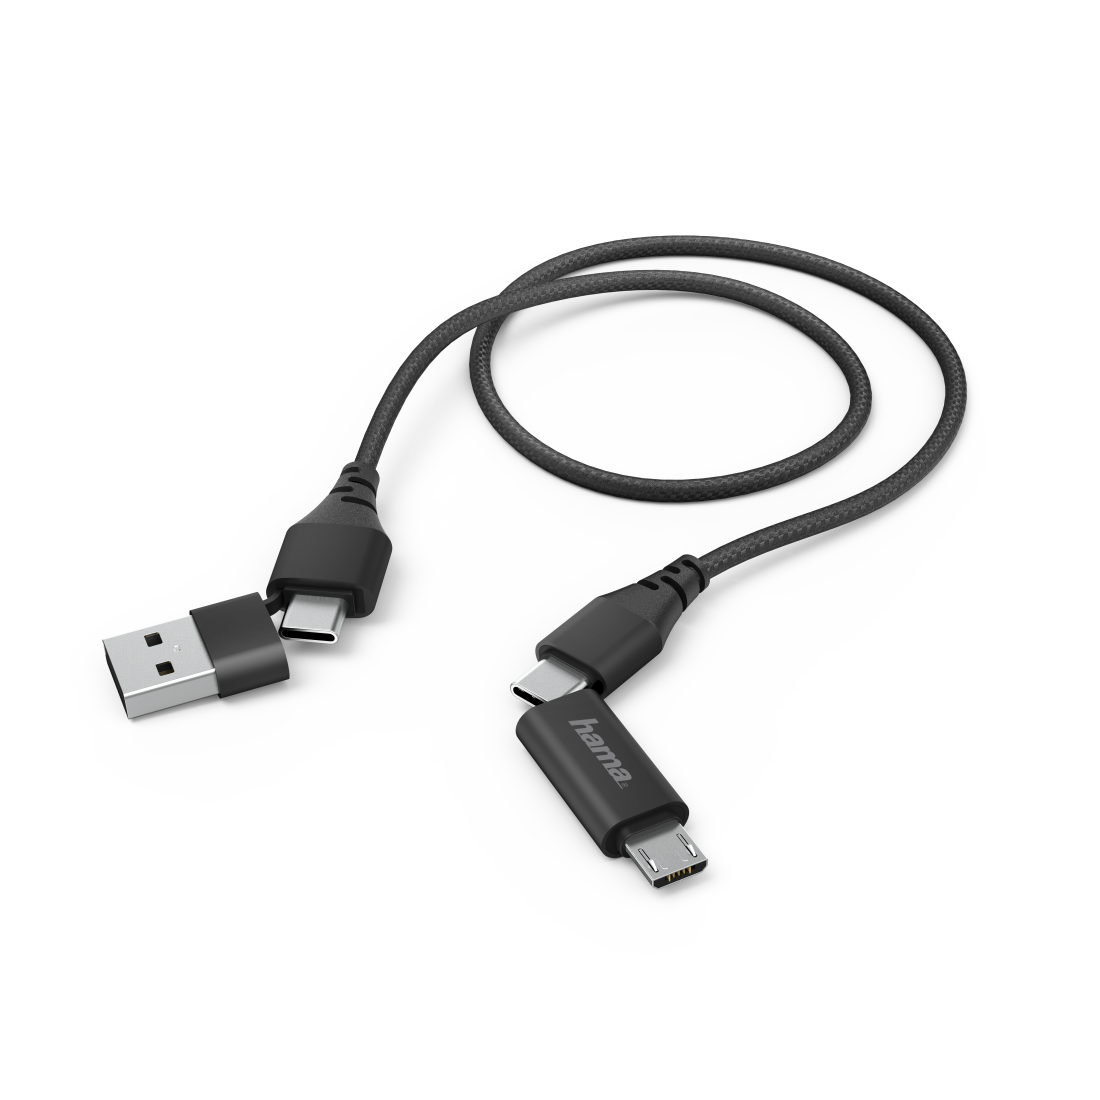 Cablu 4 in 1 Hama Type C cu adaptor Micro USB si USB-A, 1.5 m, Negru